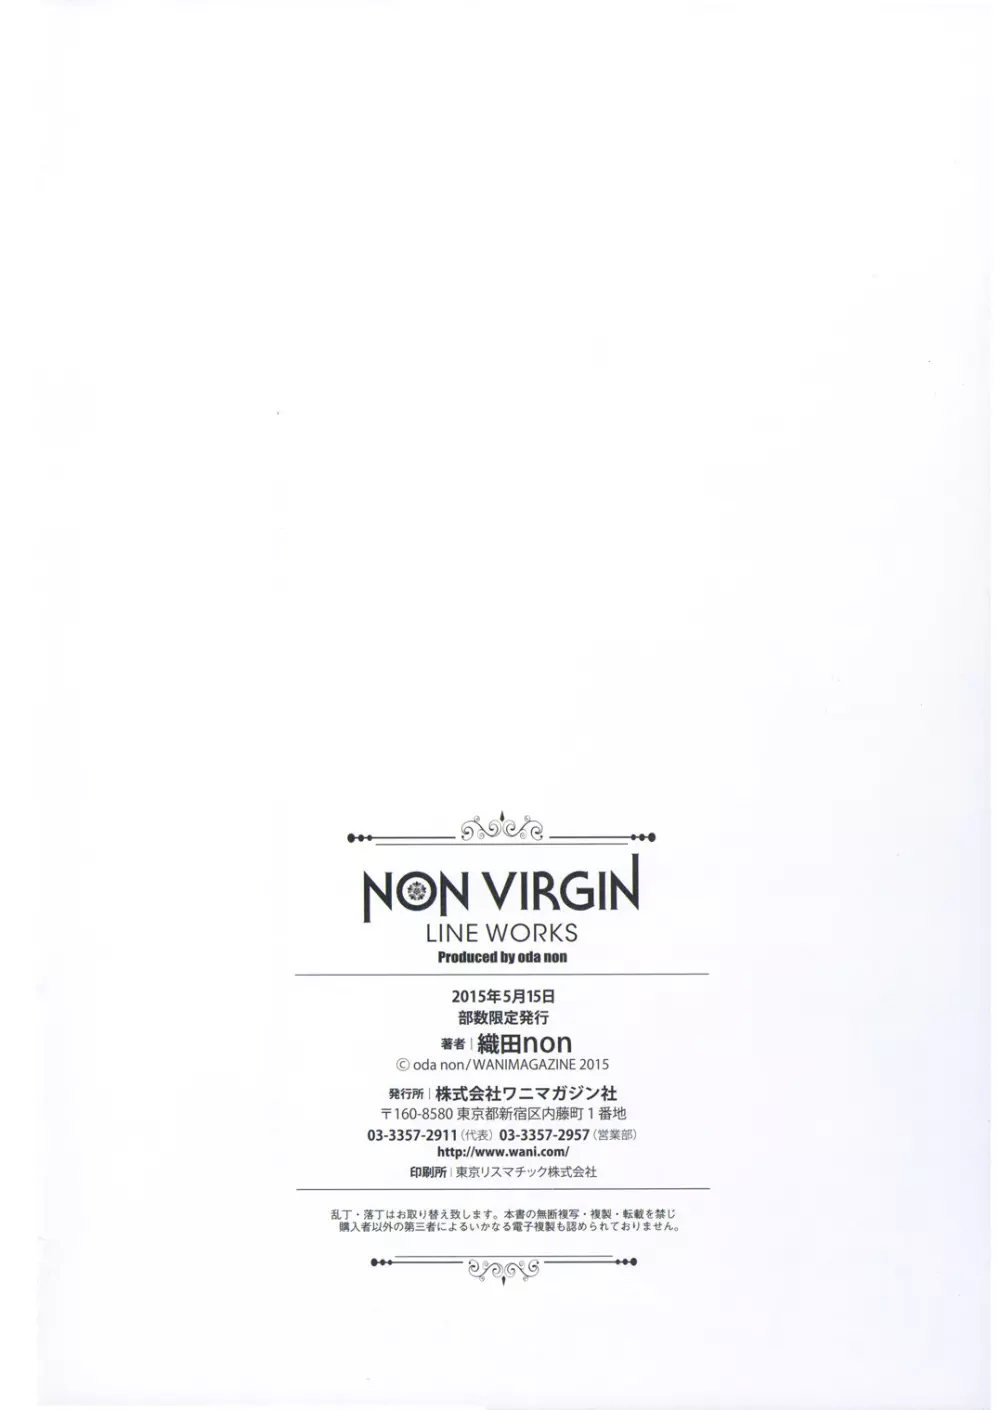 [織田non] NON VIRGIN 【Limited Edition】 CHRONICLE-FULLCOLOR BOOKLET-SIDE:MELON + NON VIRGIN LINE WORKS + Postcard 112ページ